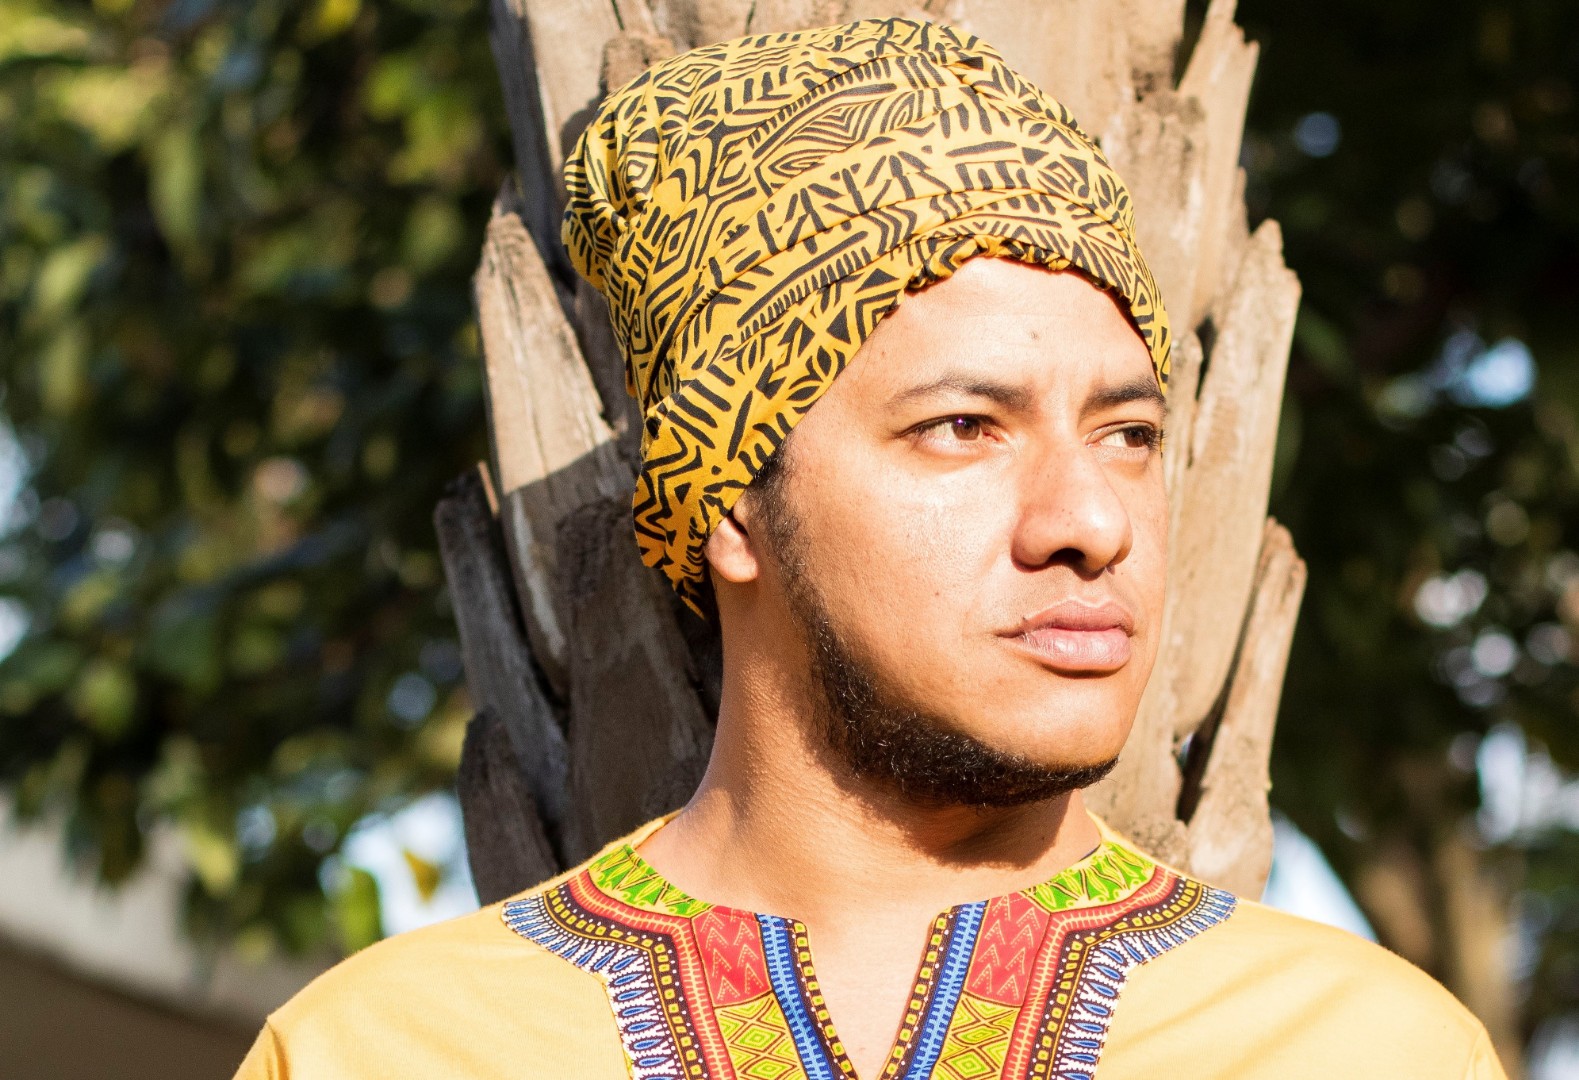 Escritor Vinícius Brasil utilizando roupas da cultura africana.